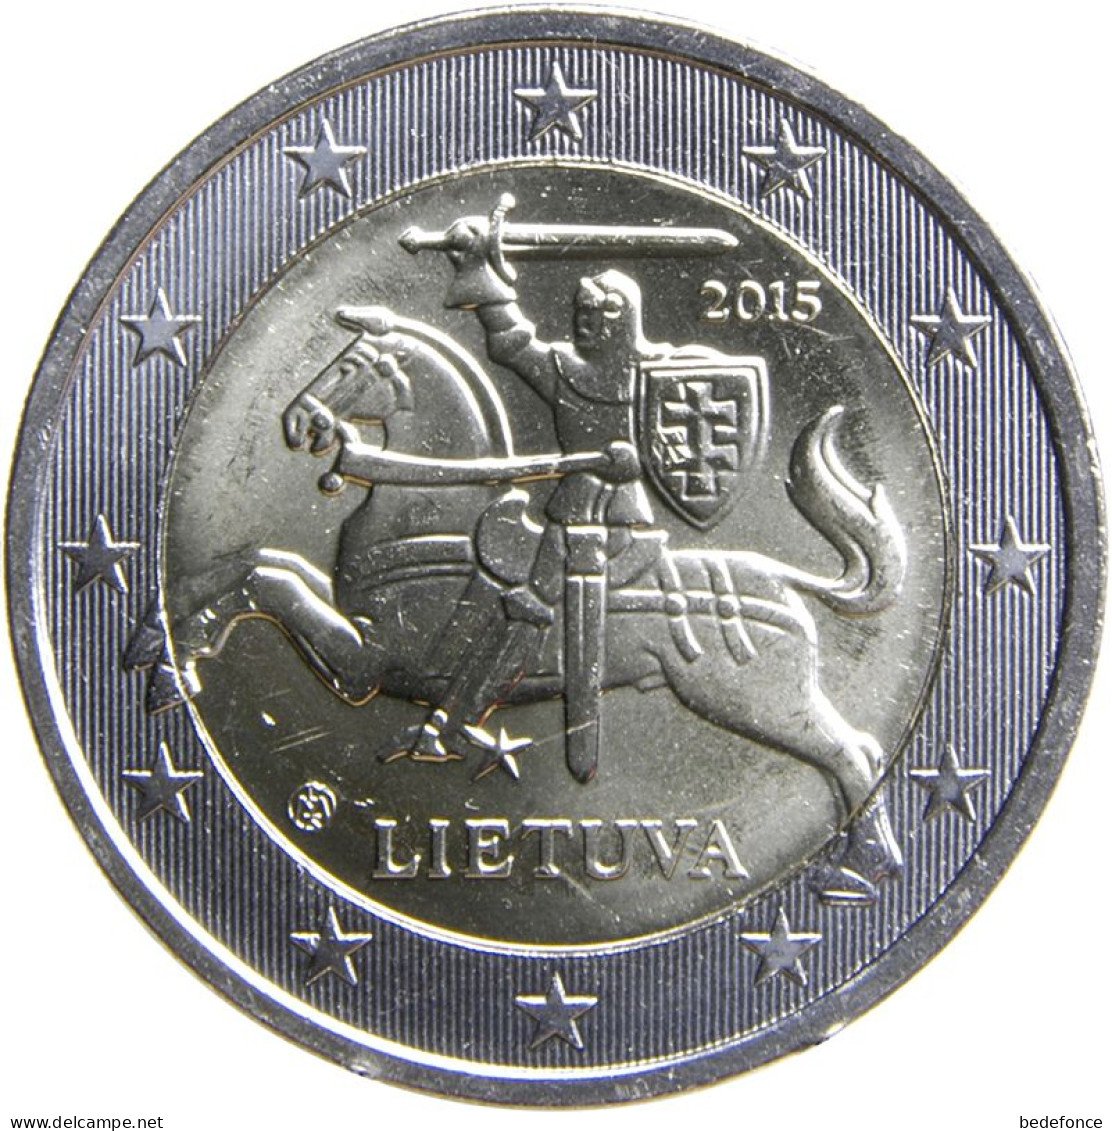 Monnaie - Lituanie - 2€ - 2015 - Lituanie